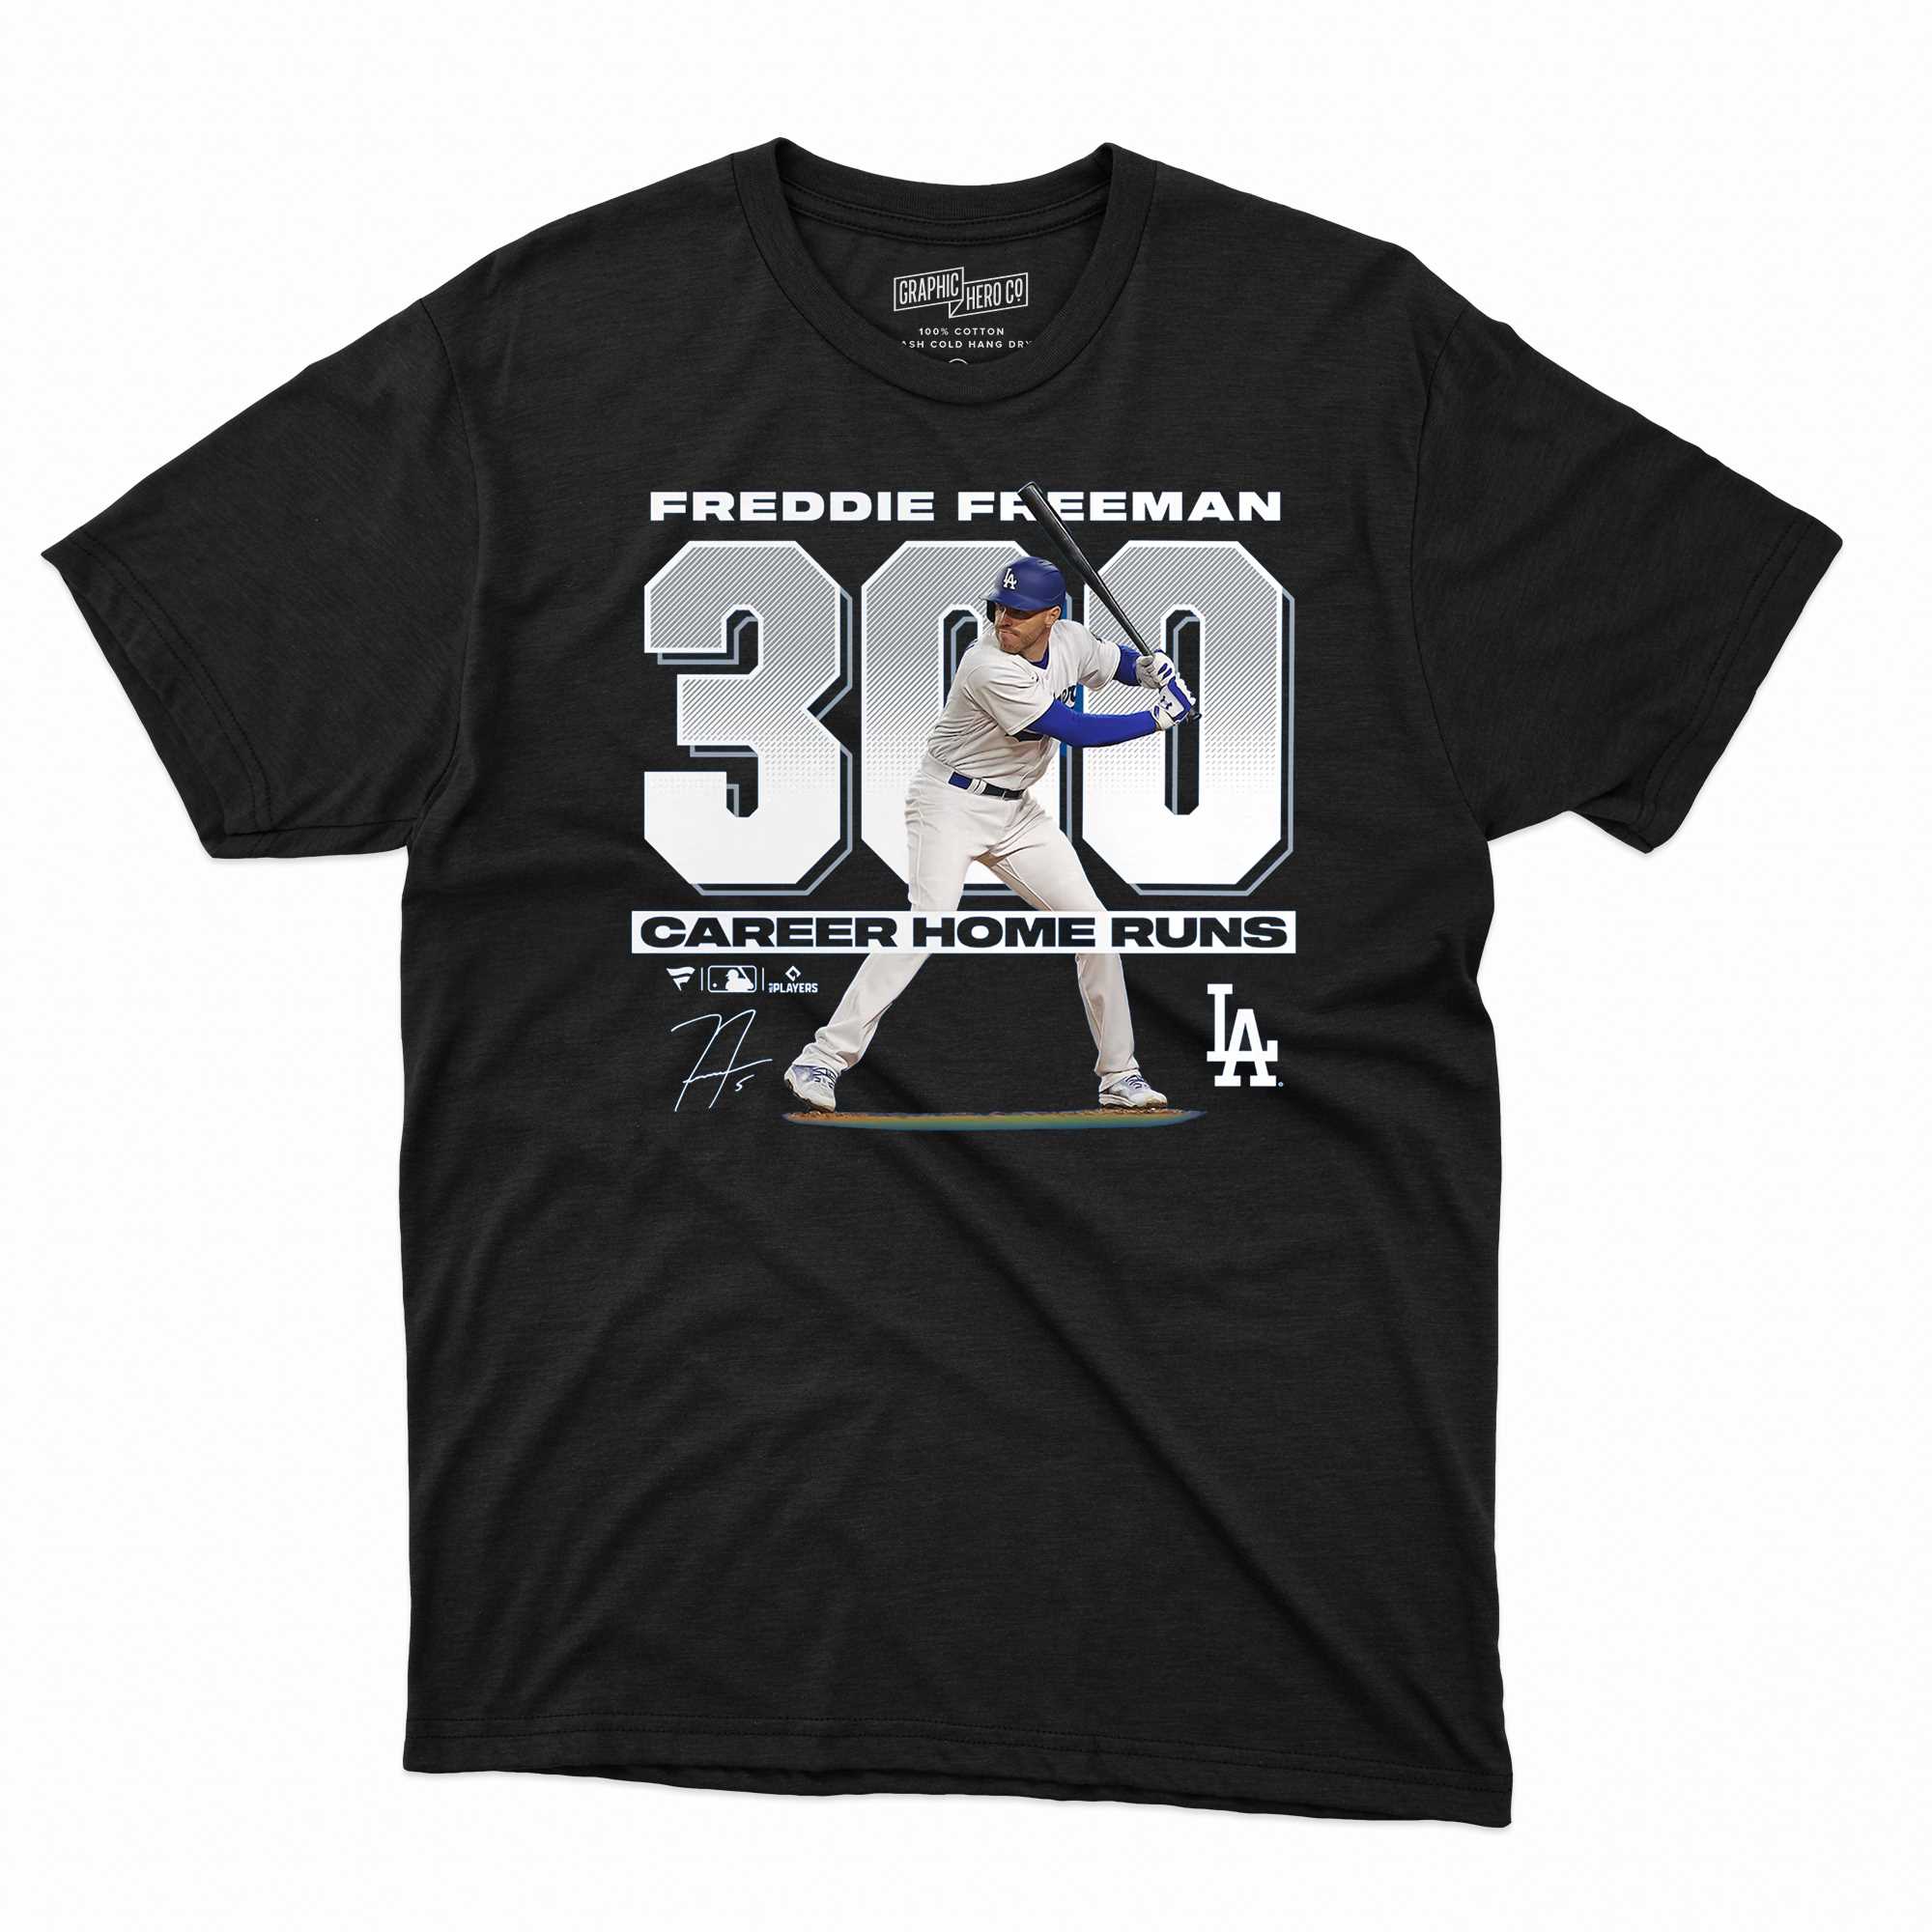 Vintage Freddie Freeman Los Angeles Dodgers T-Shirt, Sweatshirt